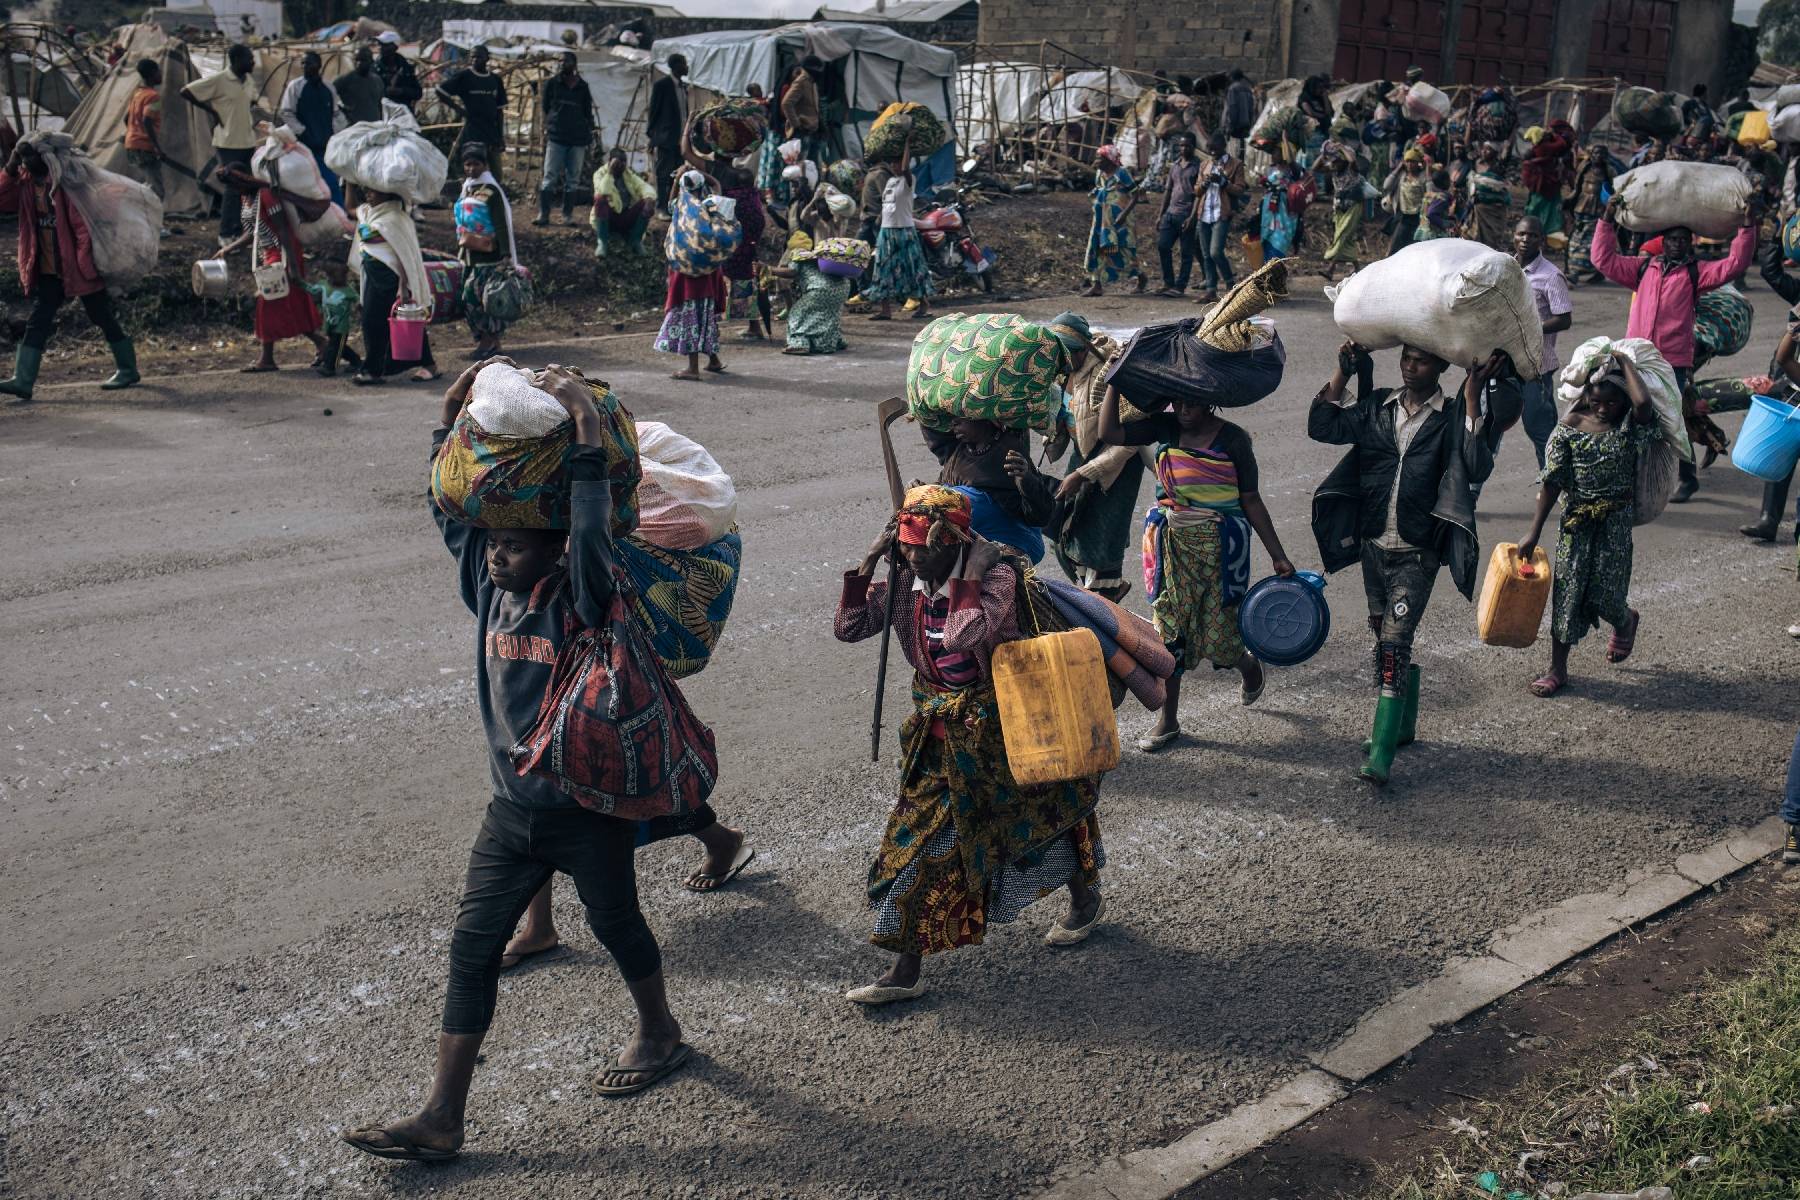 Massacre en RDC: le gouvernement évoque 